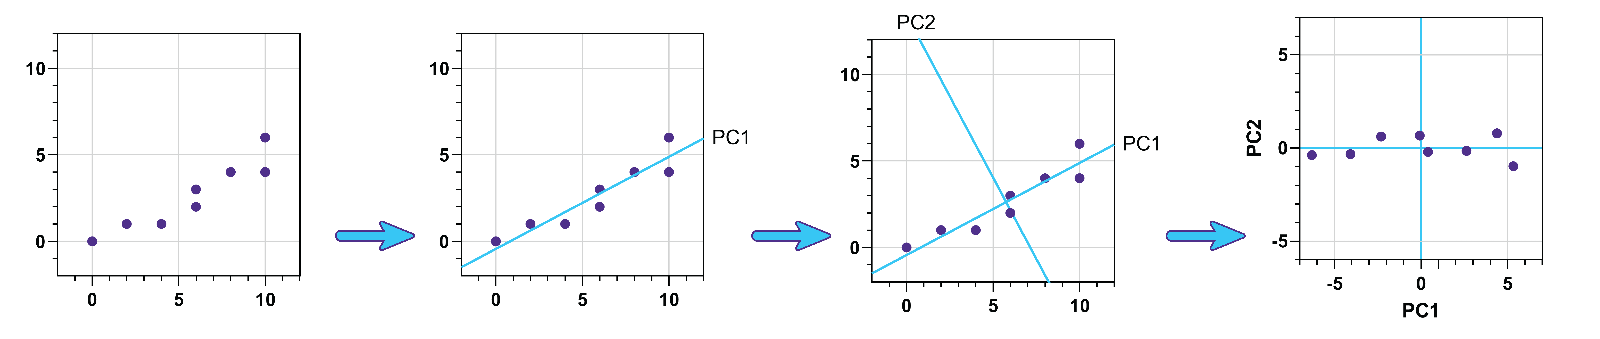 graphpad prism pca analysis